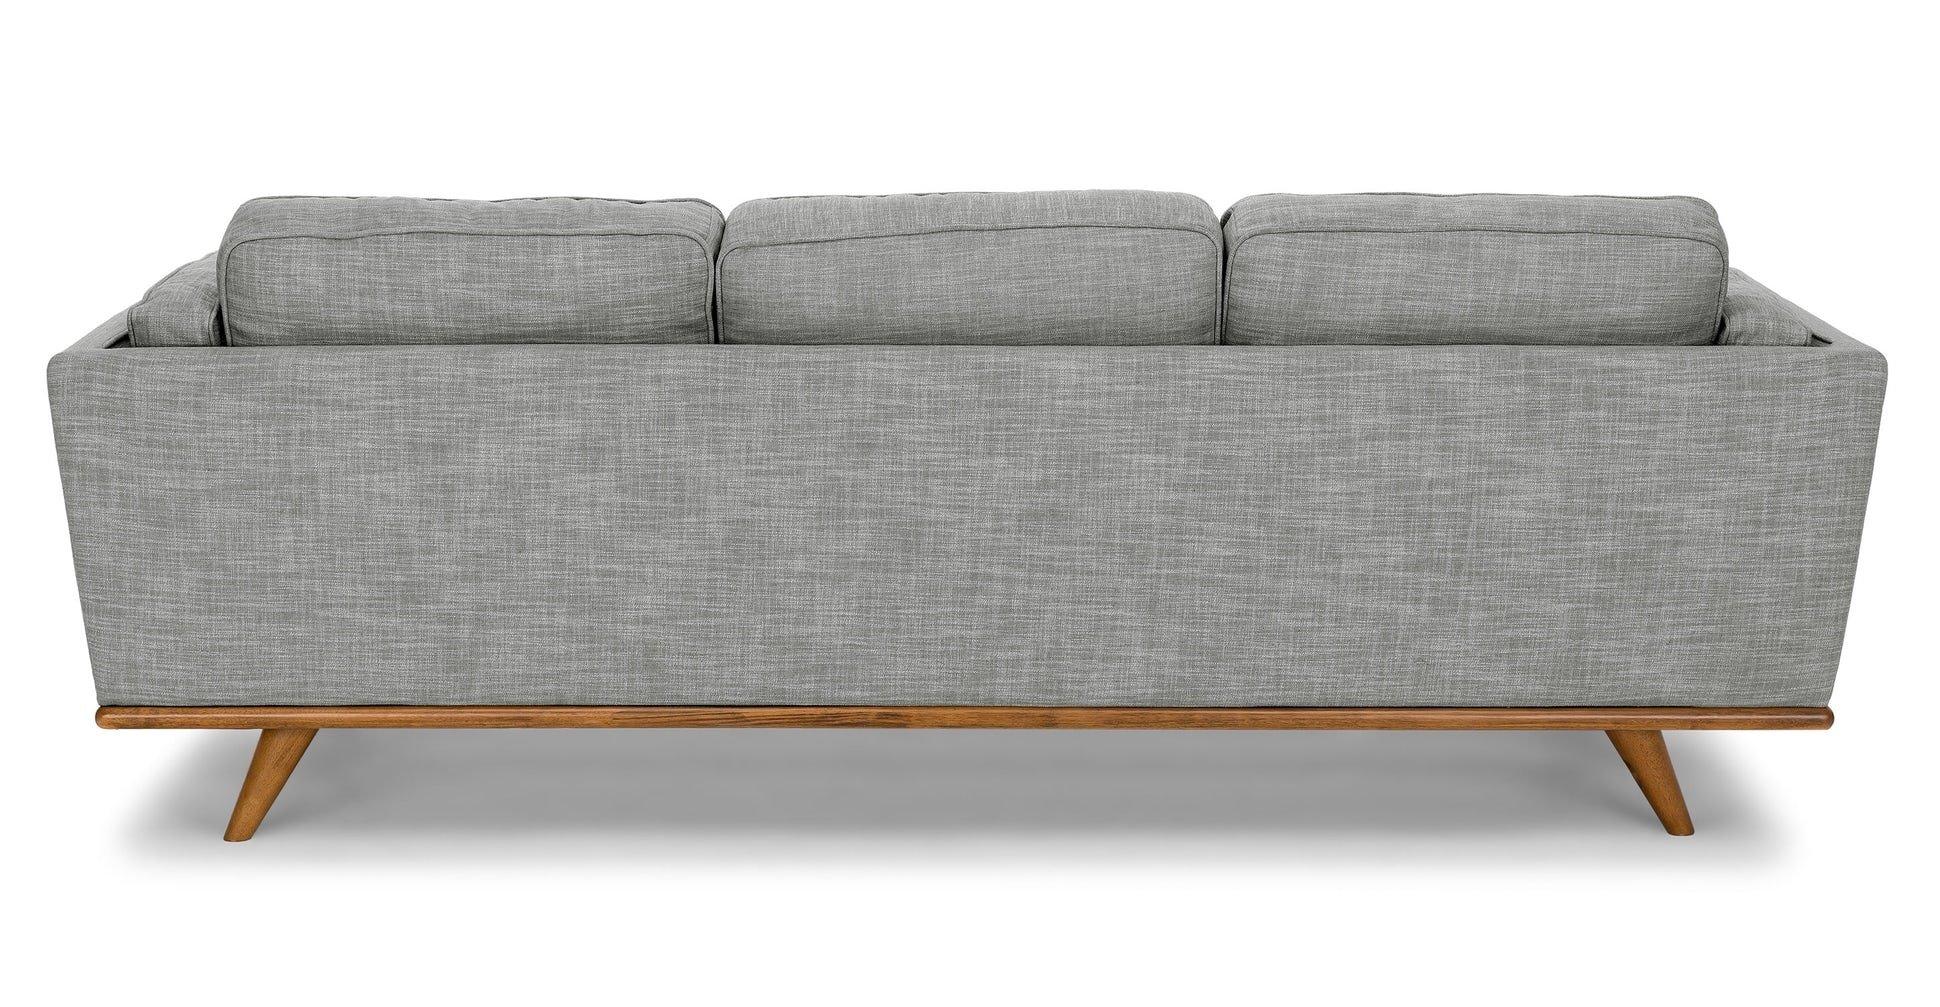 Timber Pebble Gray Sofa - Image 2